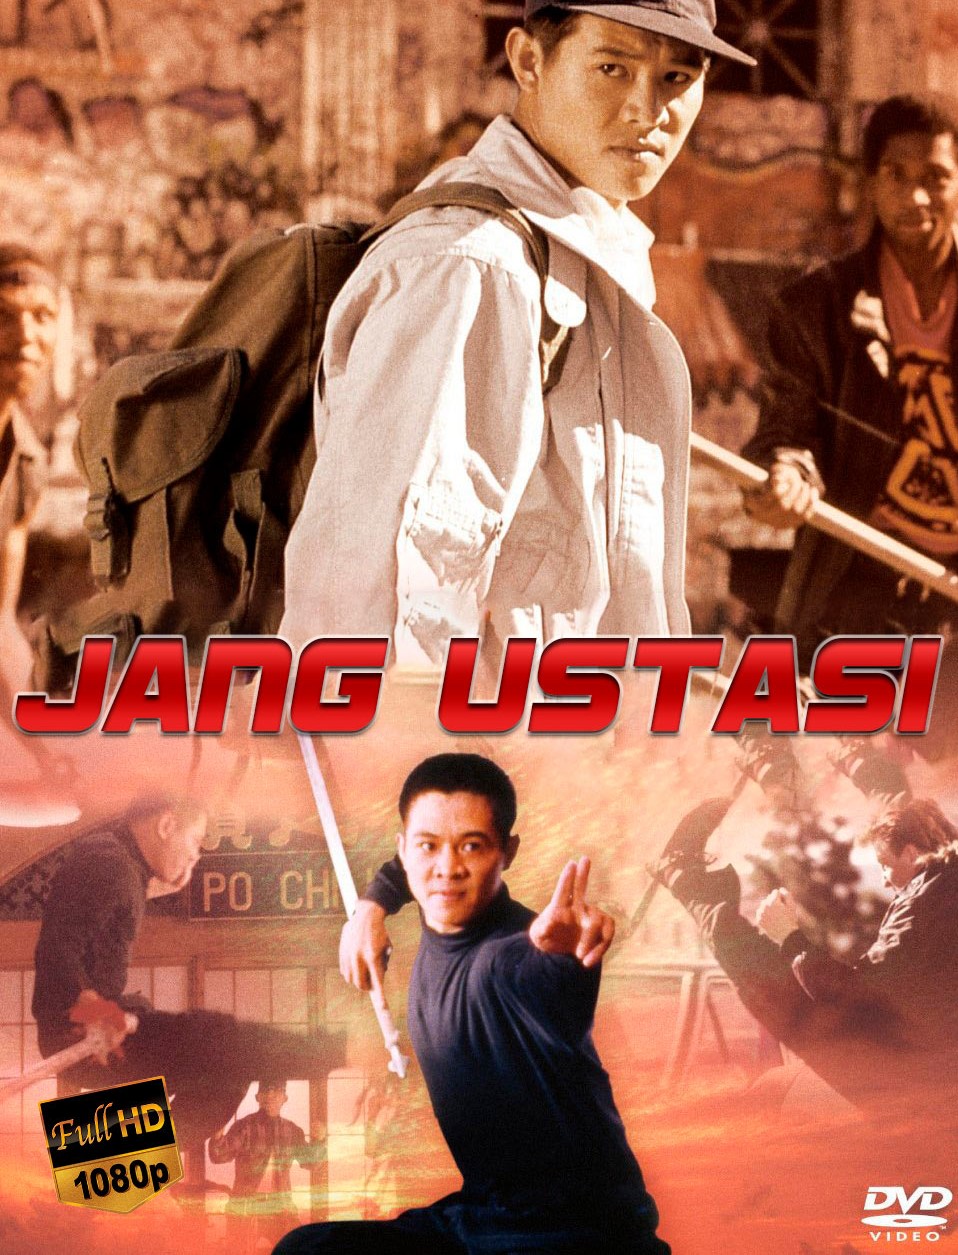 Jang ustasi (Jet-Li ishtirokida) Uzbek tilida 1992 tarjima kino skachat